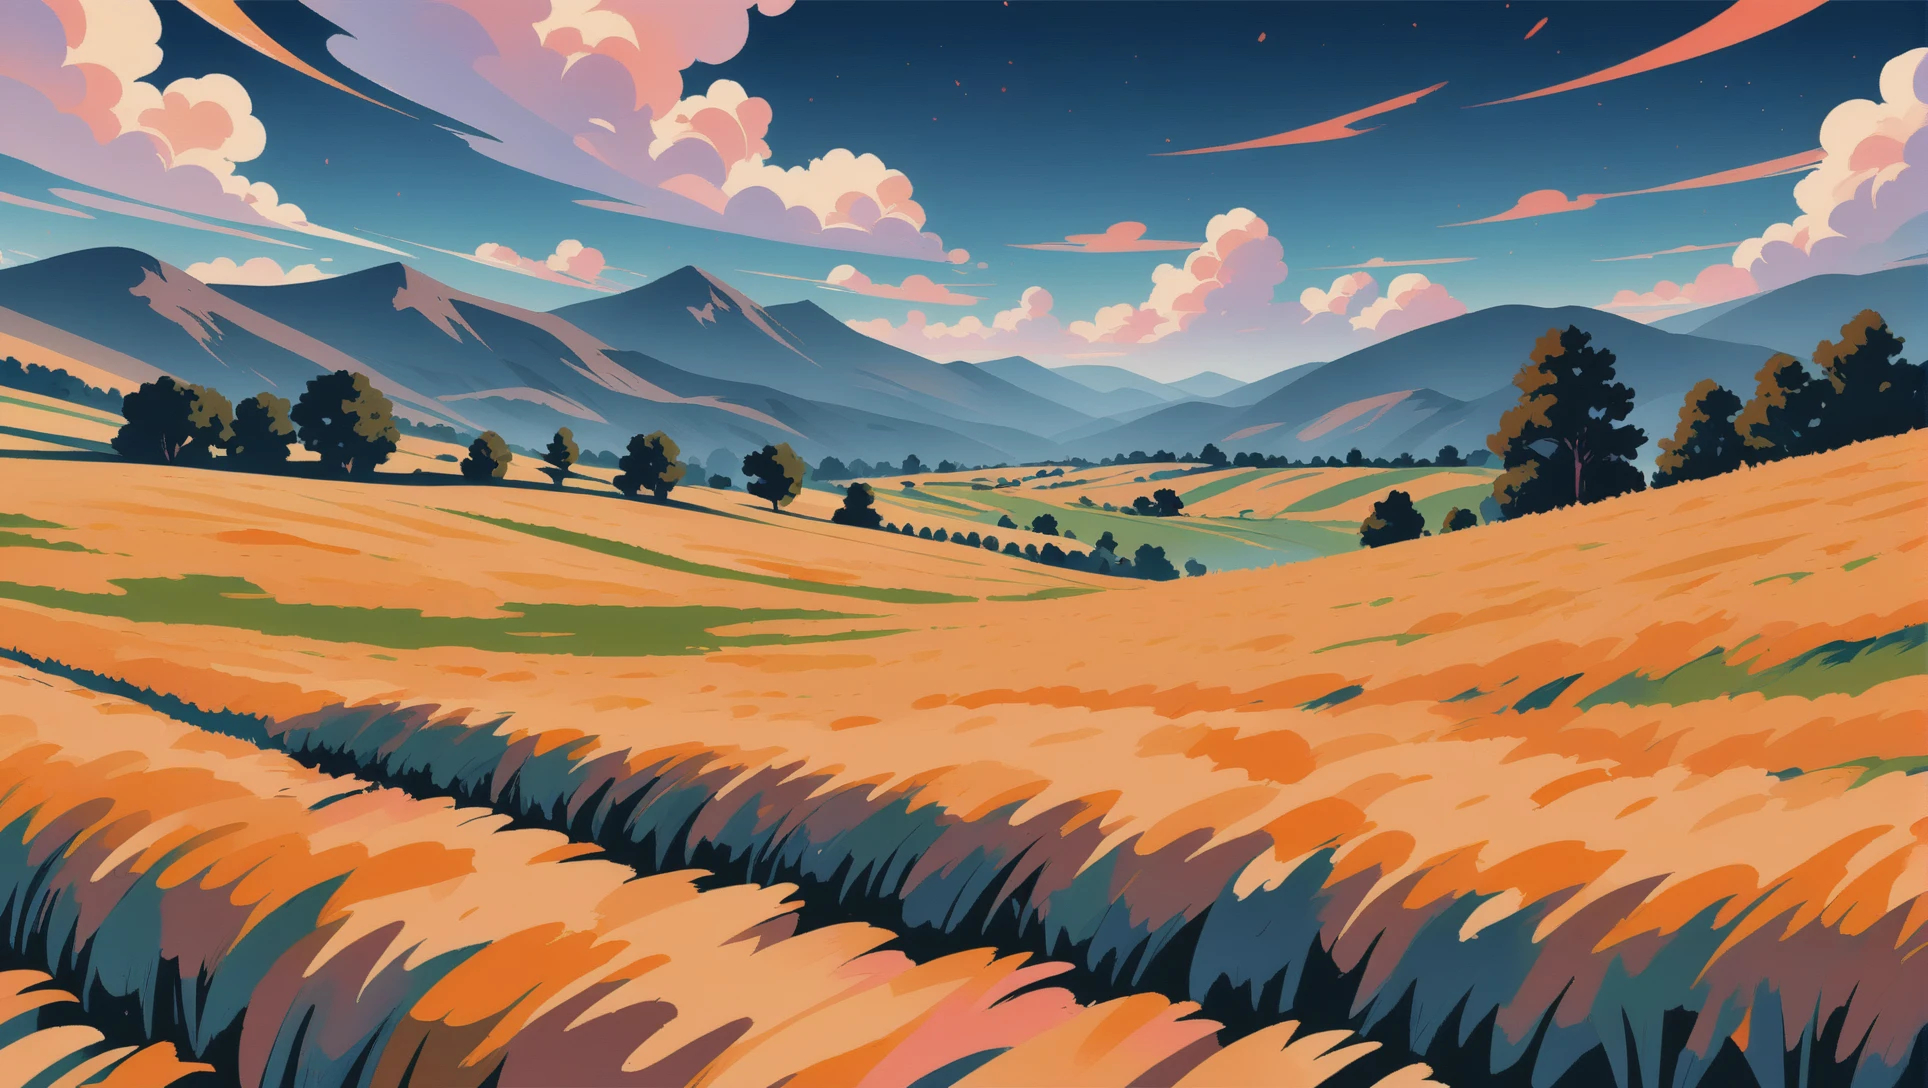 动漫风格绘景, 連綿起伏的丘陵間的麥田